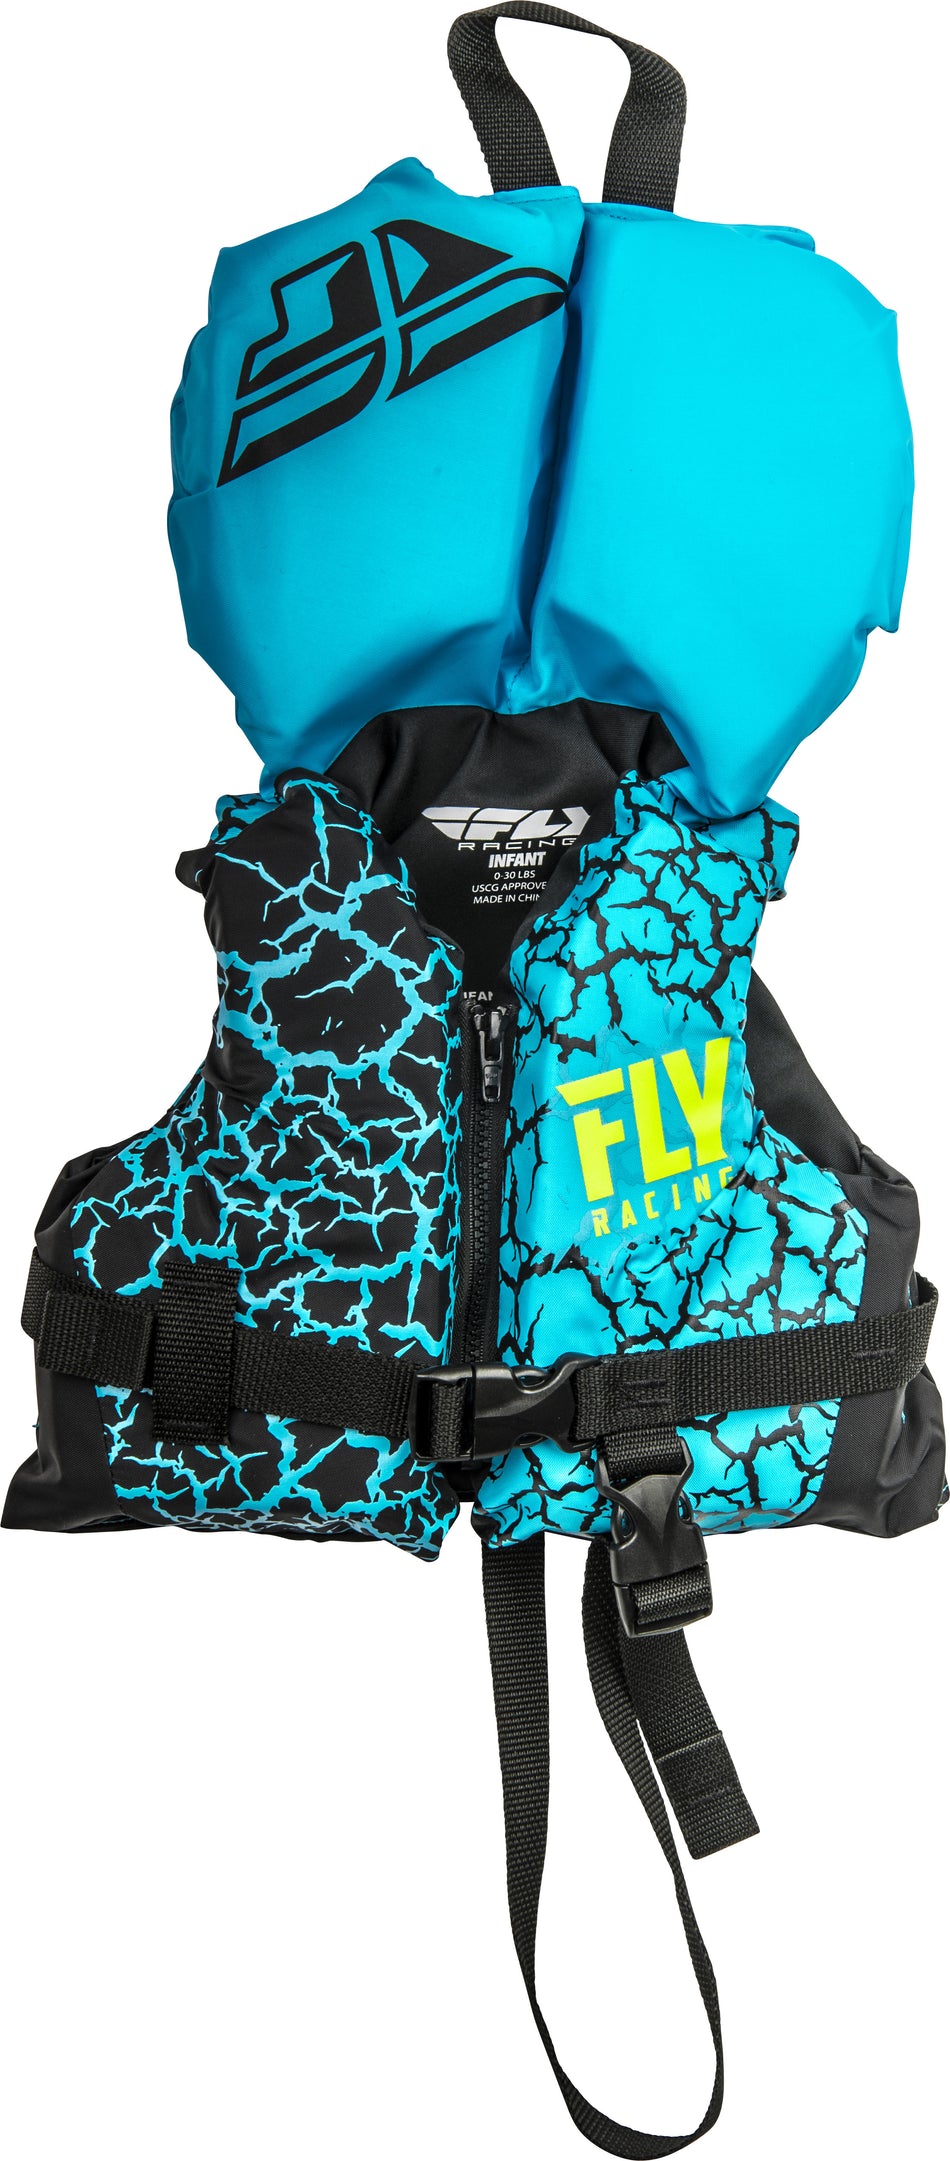 FLY RACING Nylon Life Jacket Blue/Black Infant 112424-500-000-18